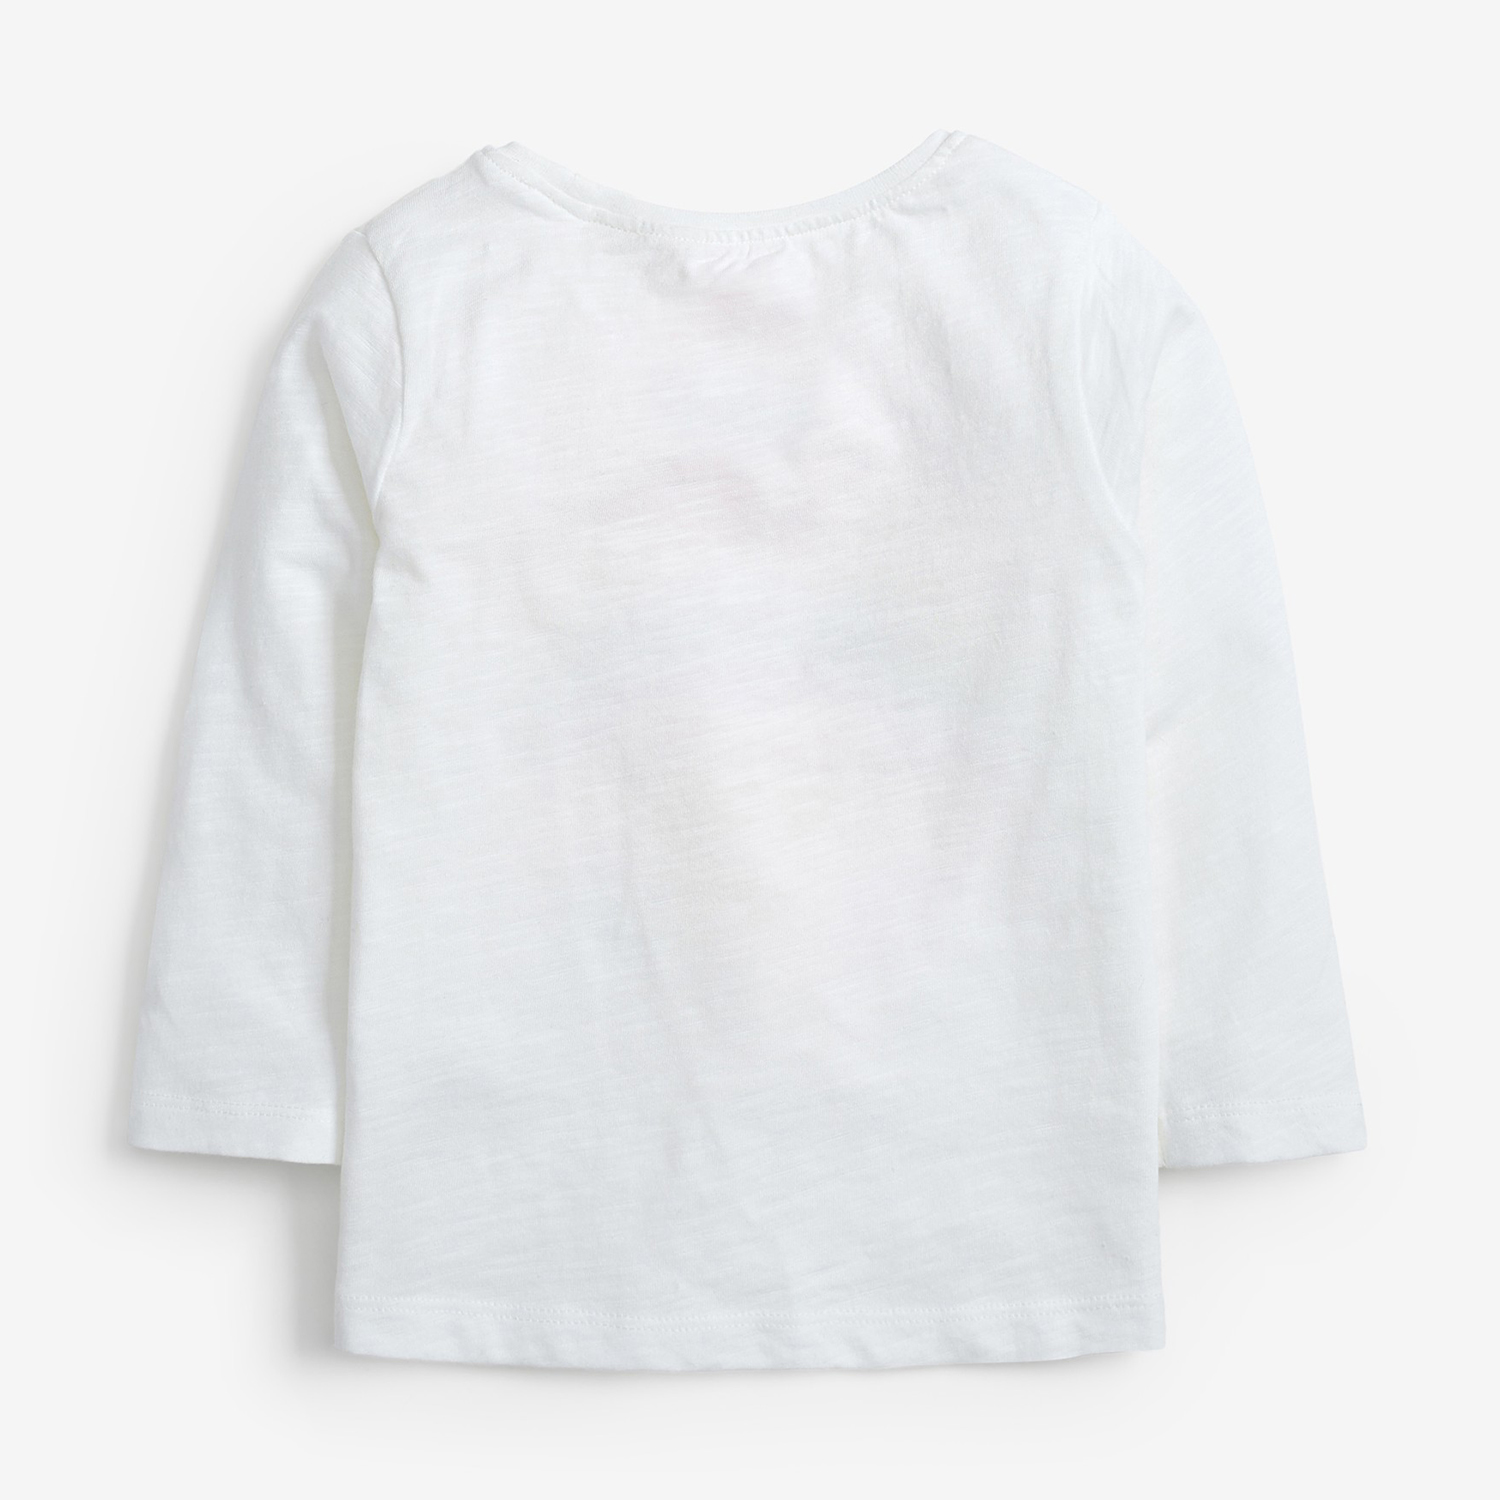 تی شرت آستین بلند نوزادی نکست مدل Minni رنگ سفید -  - 2